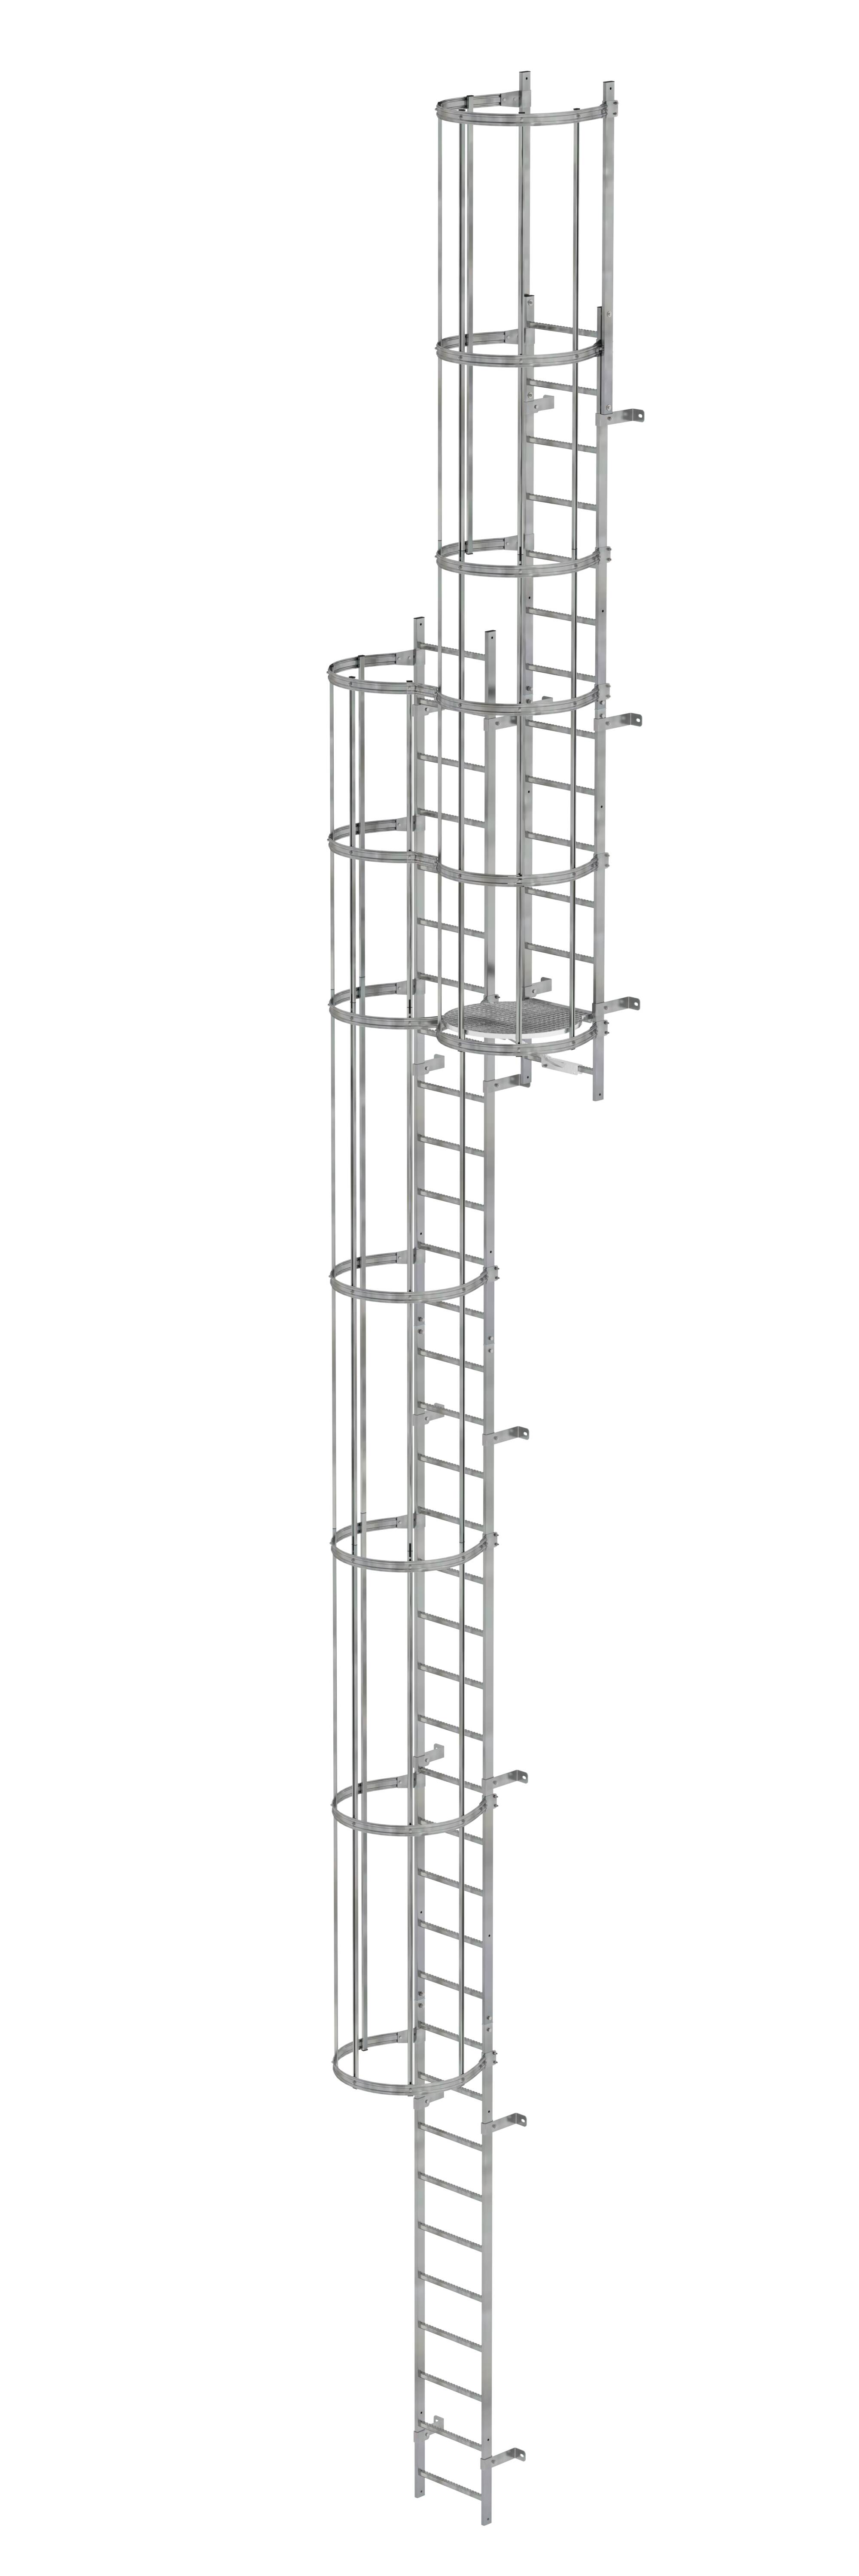 MUNK Mehrzügige Steigleiter mit Rückenschutz (Bau) Stahl verzinkt  